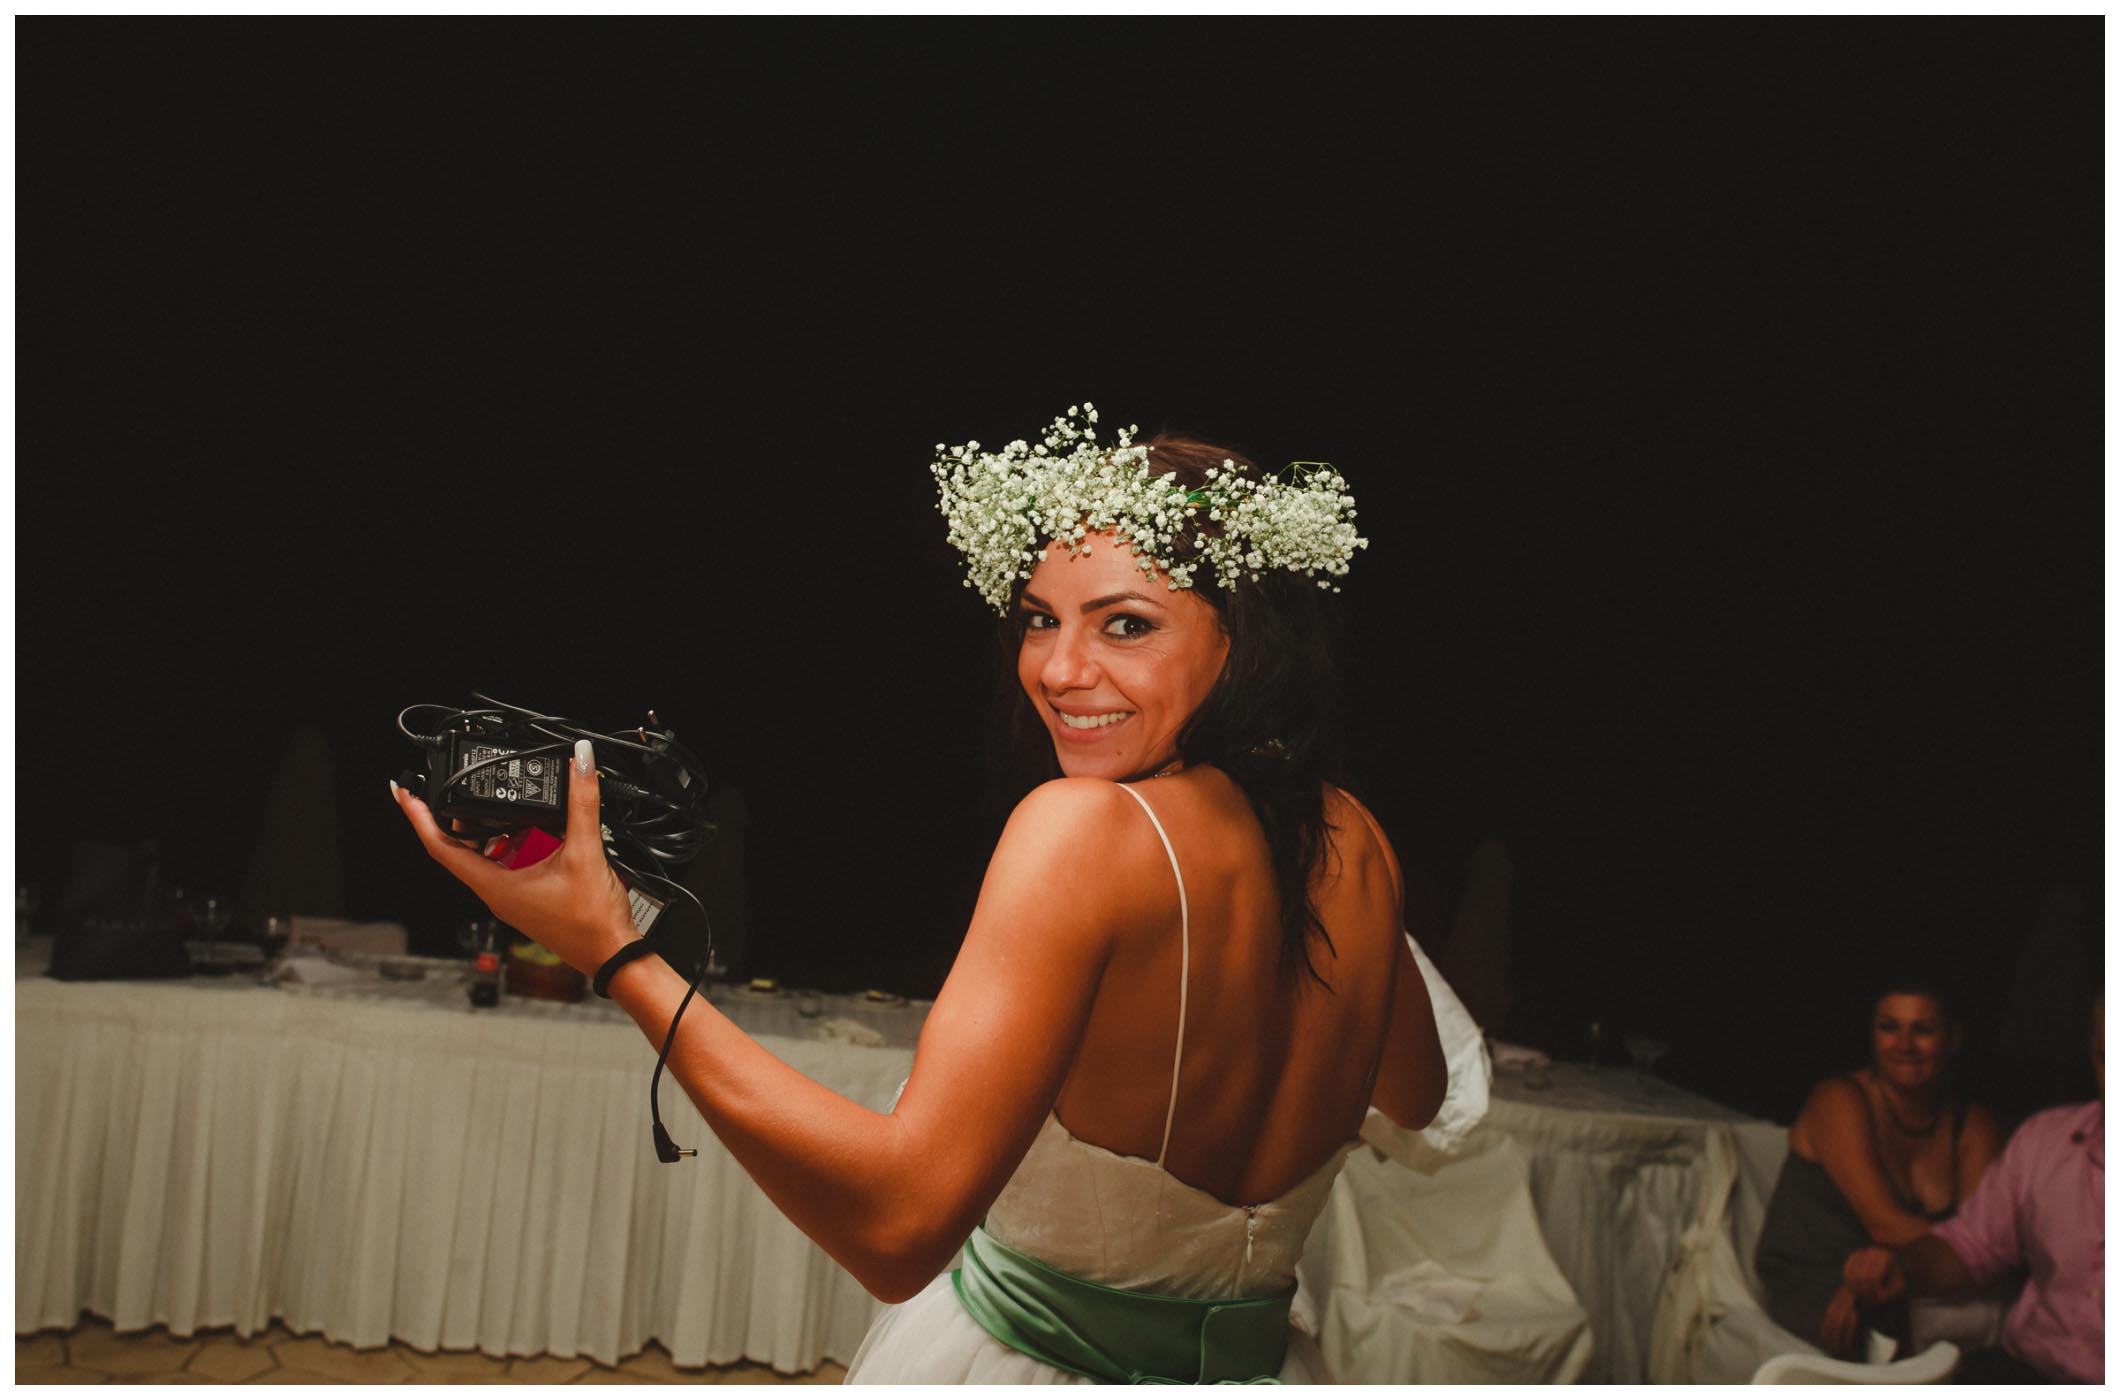 φωτογραφηση γαμου Καλαβρυτα,φωτογράφηση γάμου Καλάβρυτα